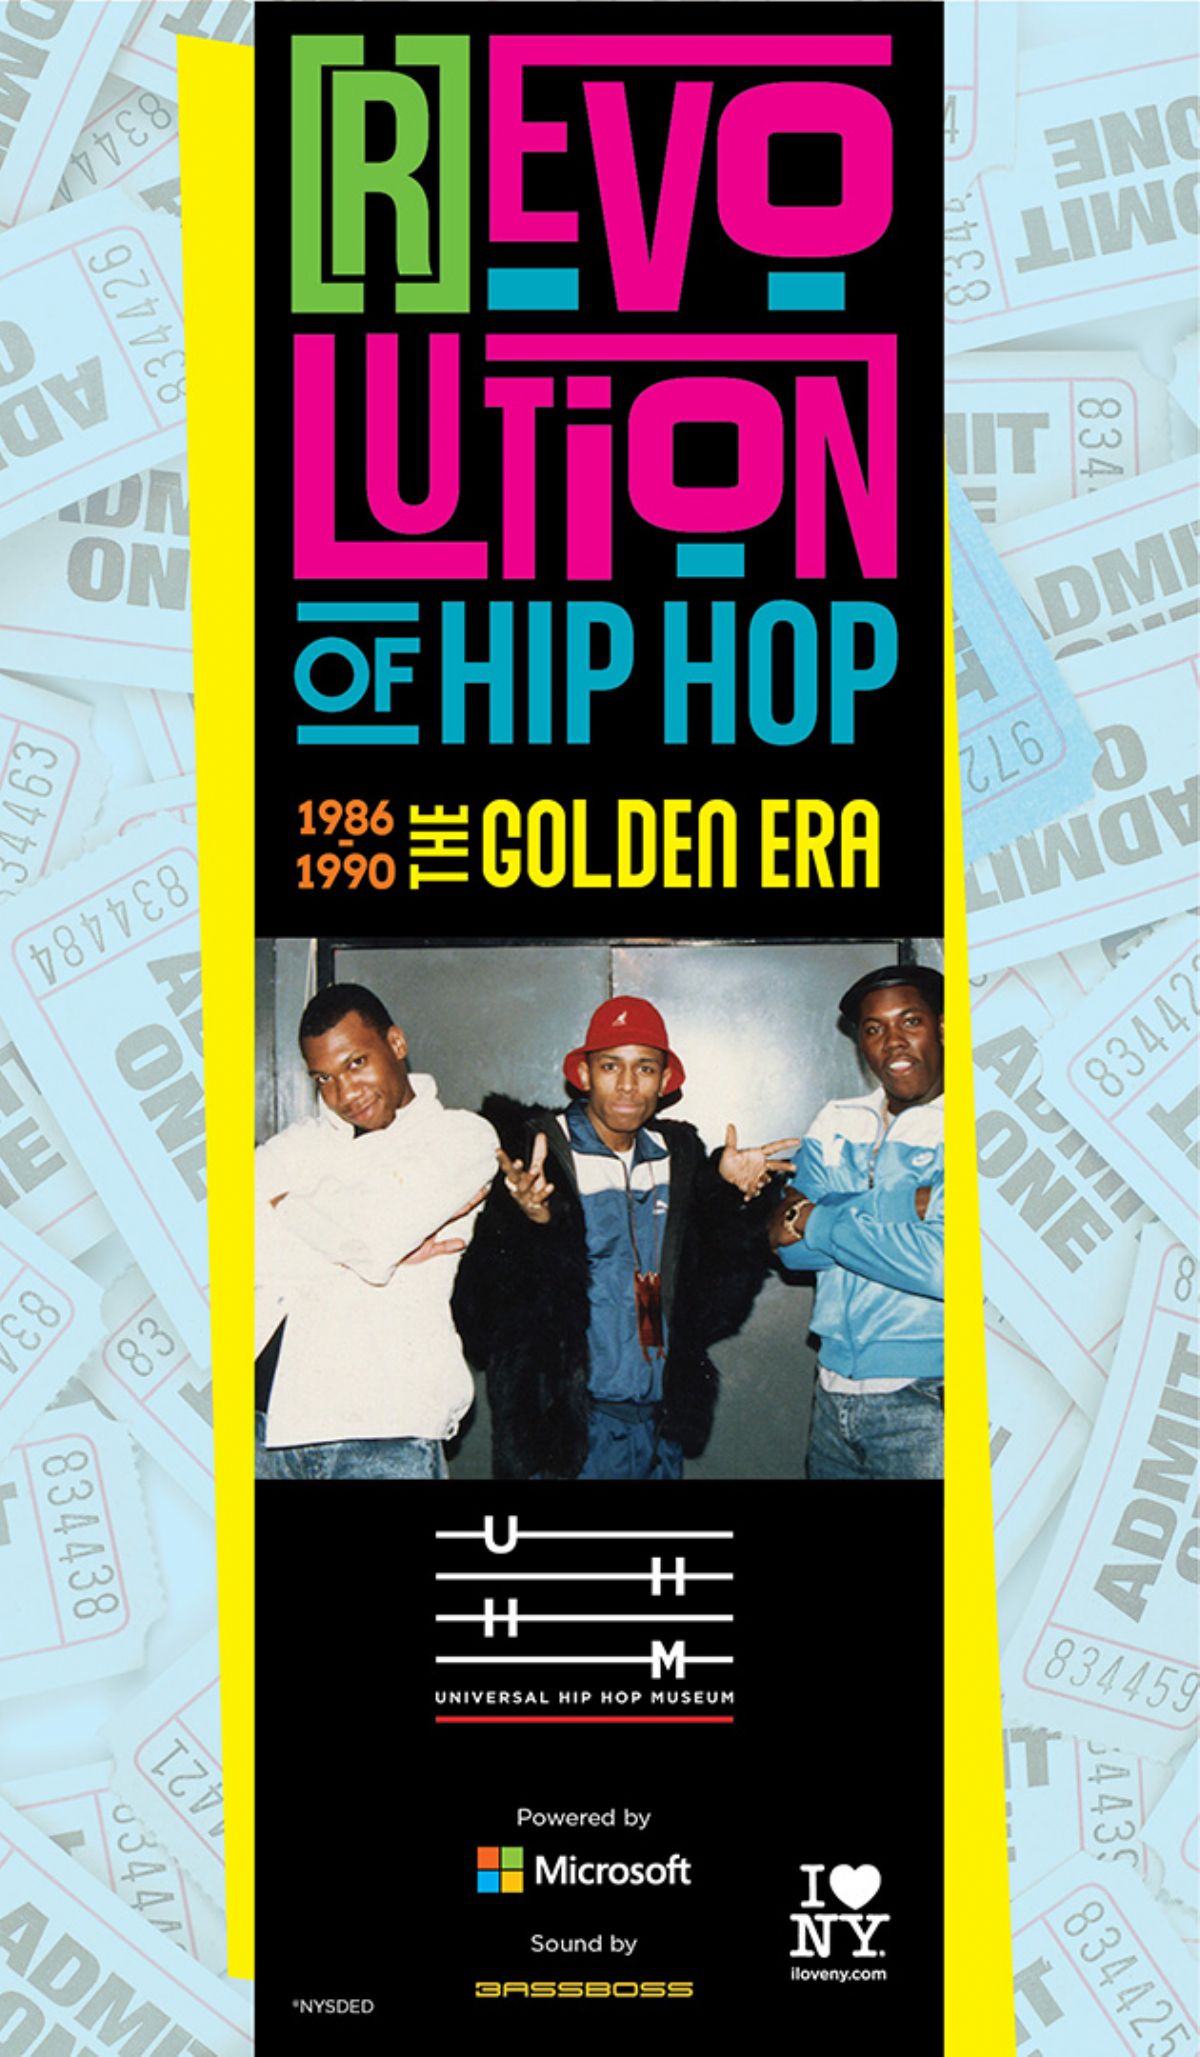 [R]Evolution of Hip Hop (1986-1990)